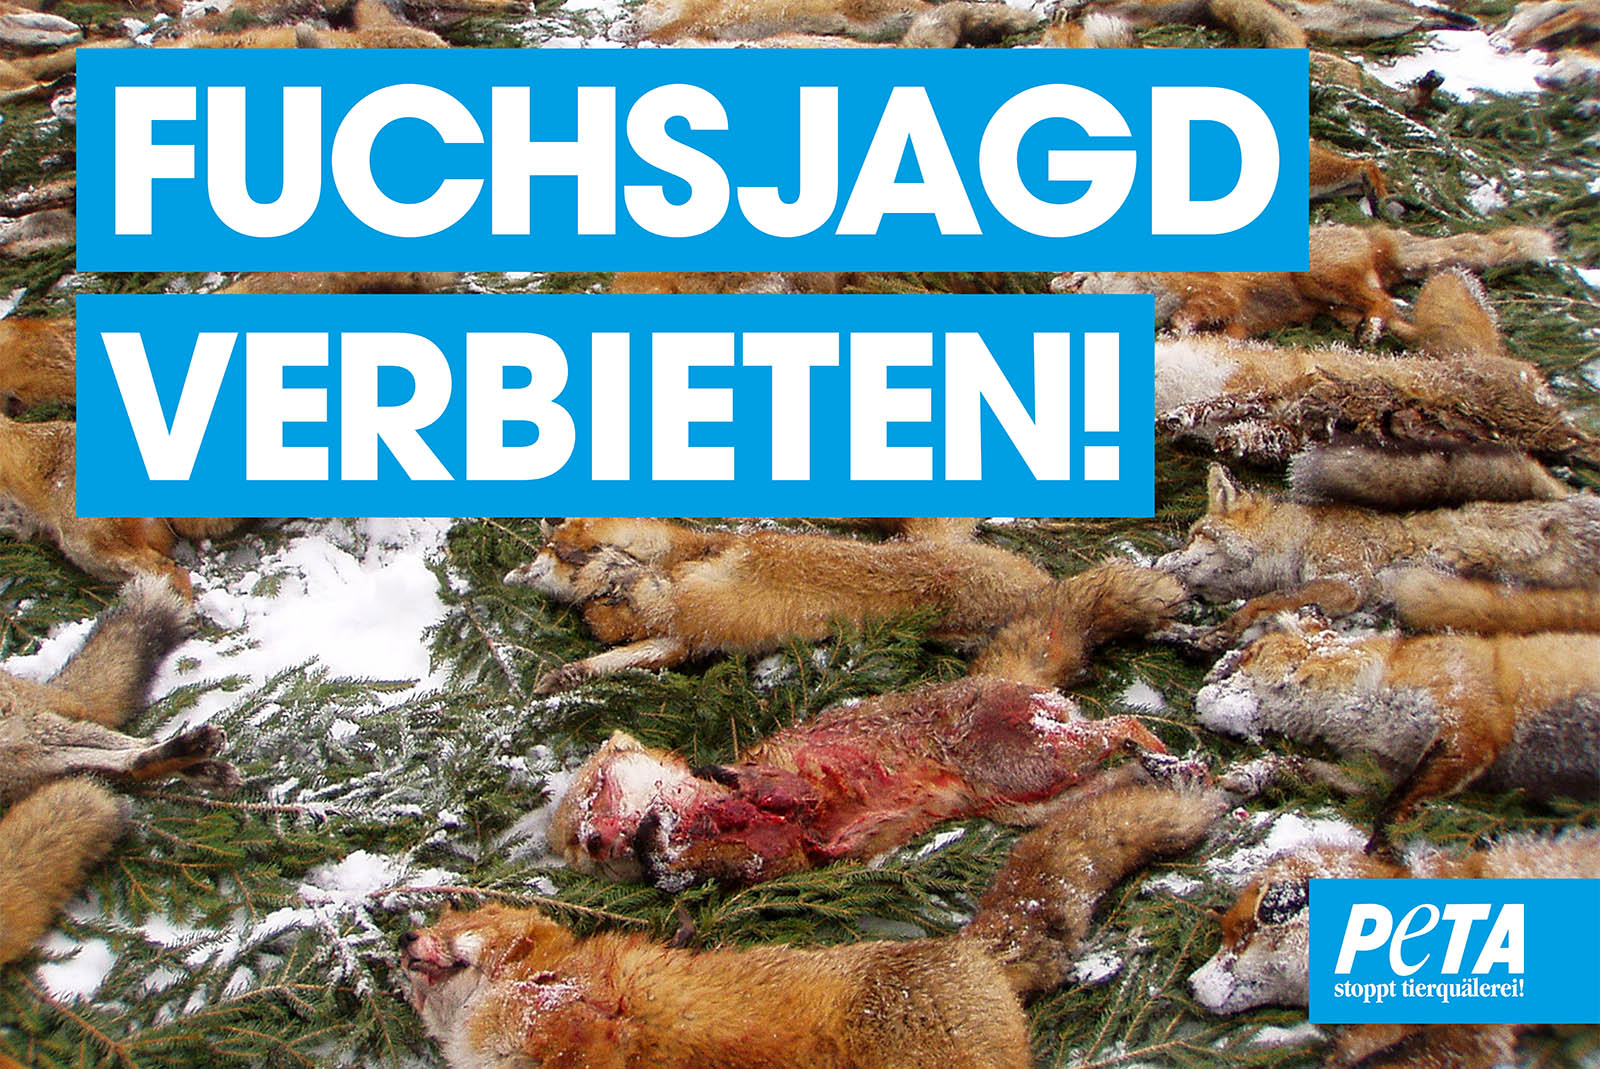 Mahnwache gegen die Fuchsjagd – jetzt kostenloses Demopaket bestellen!